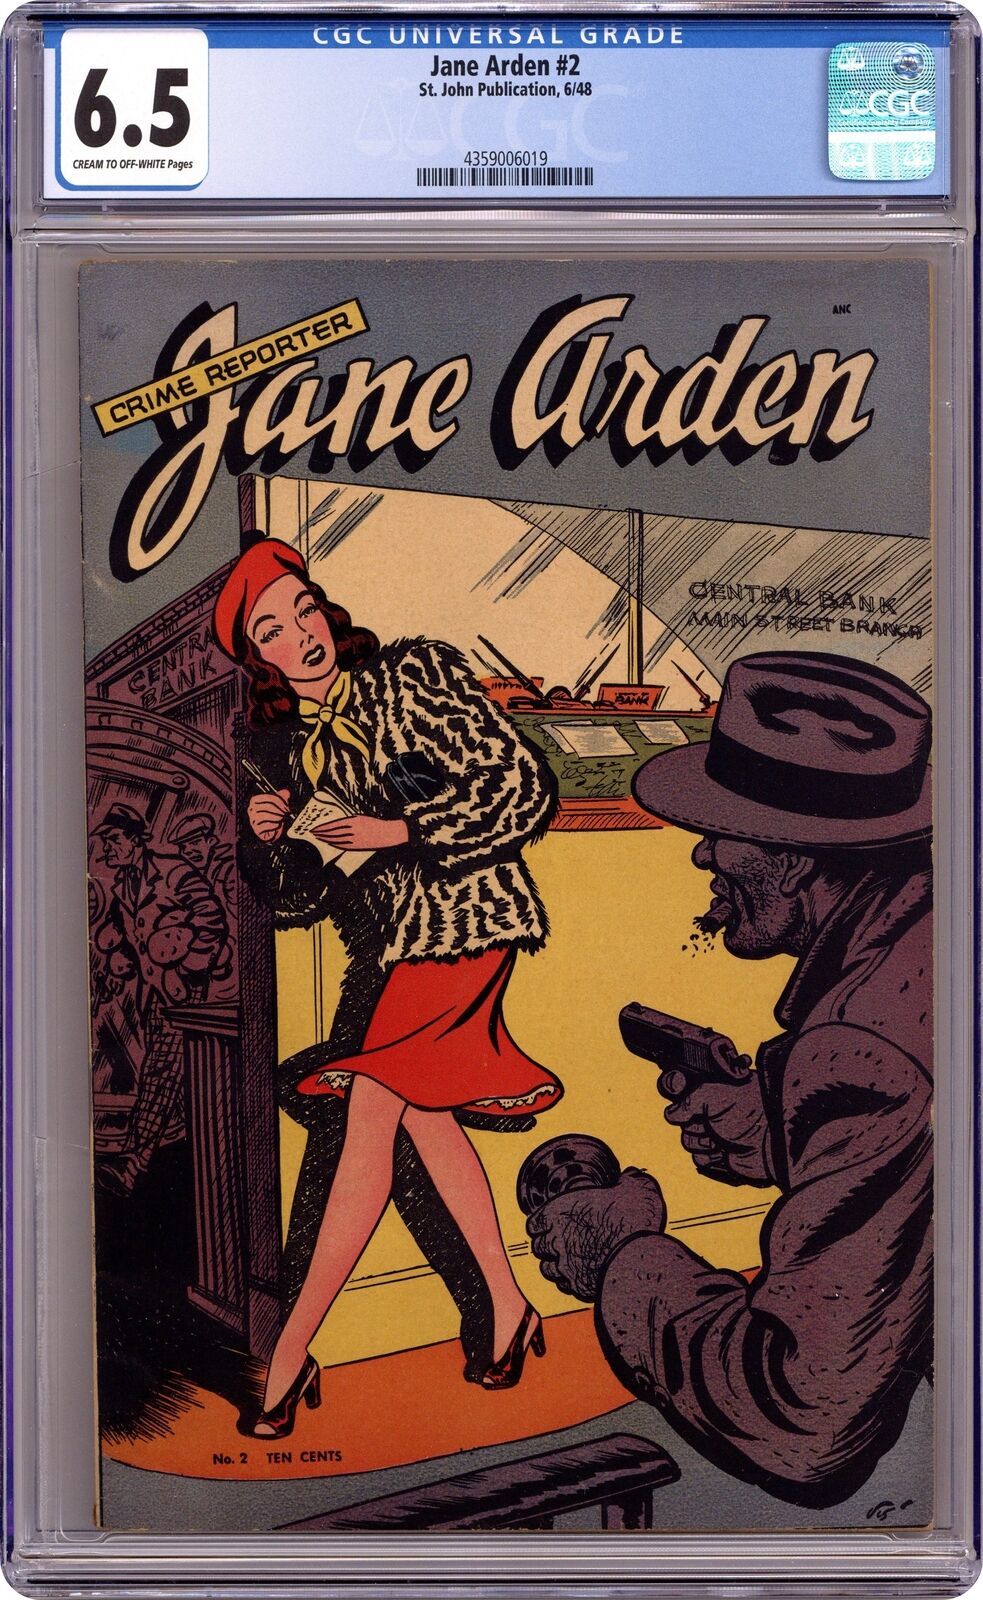 Jane Arden #2 CGC 6.5 1948 4359006019